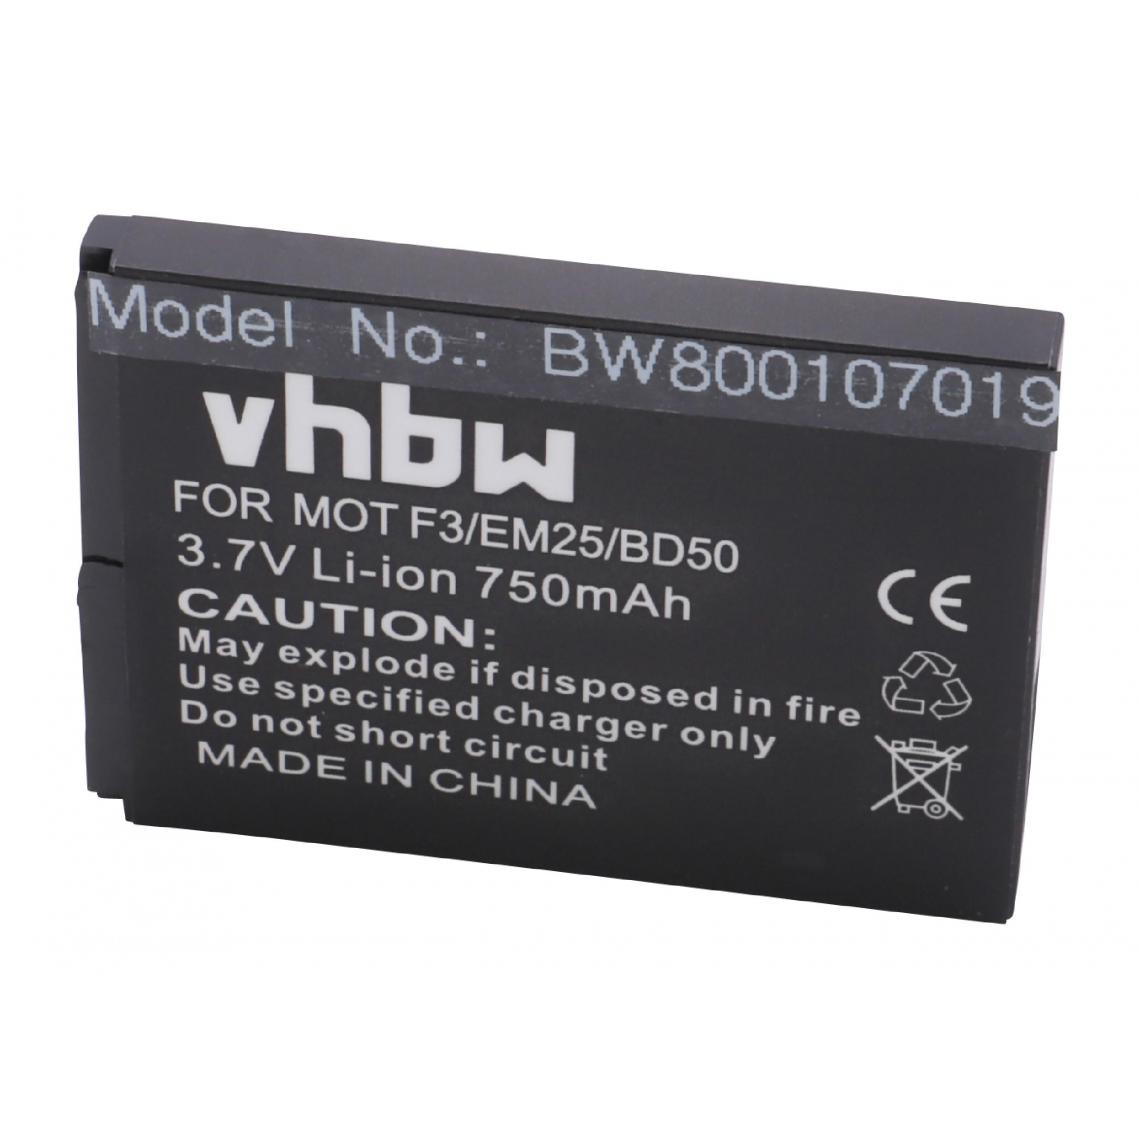 Vhbw - vhbw Batterie remplacement pour AVM 100402, 312BAT006, 312BAT016, BAK130506, EAC62339101 pour téléphone fixe sans fil (750mAh, 3,7V, Li-ion) - Batterie téléphone